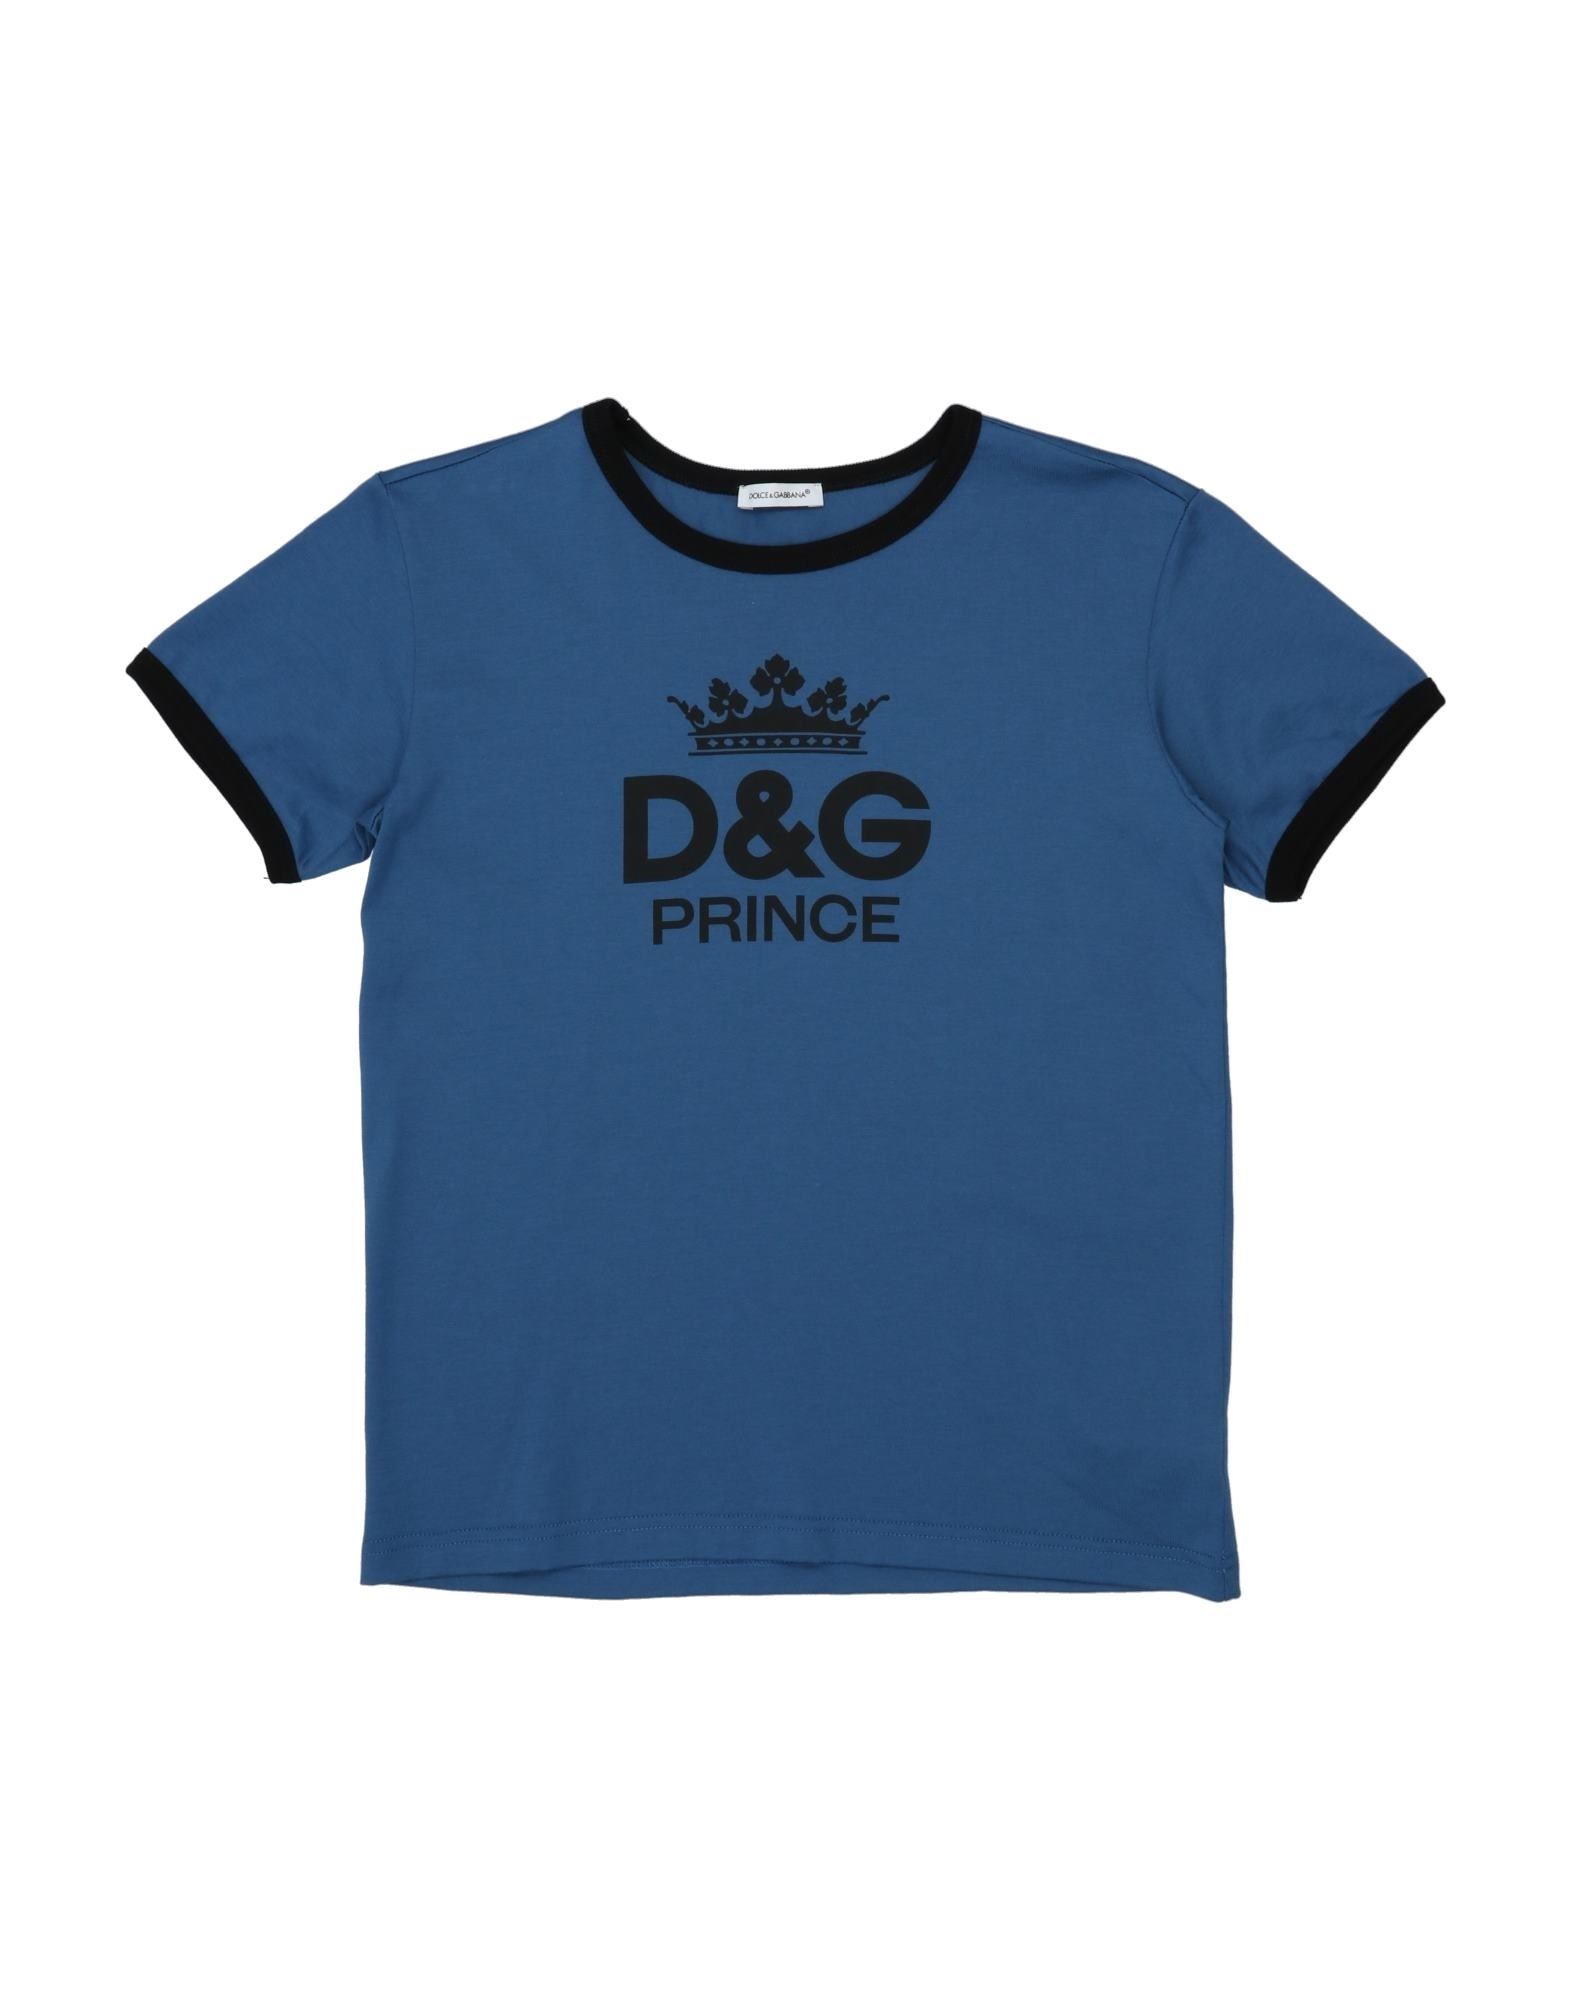 Dolce & Gabbana Kids' T-shirts In Slate Blue